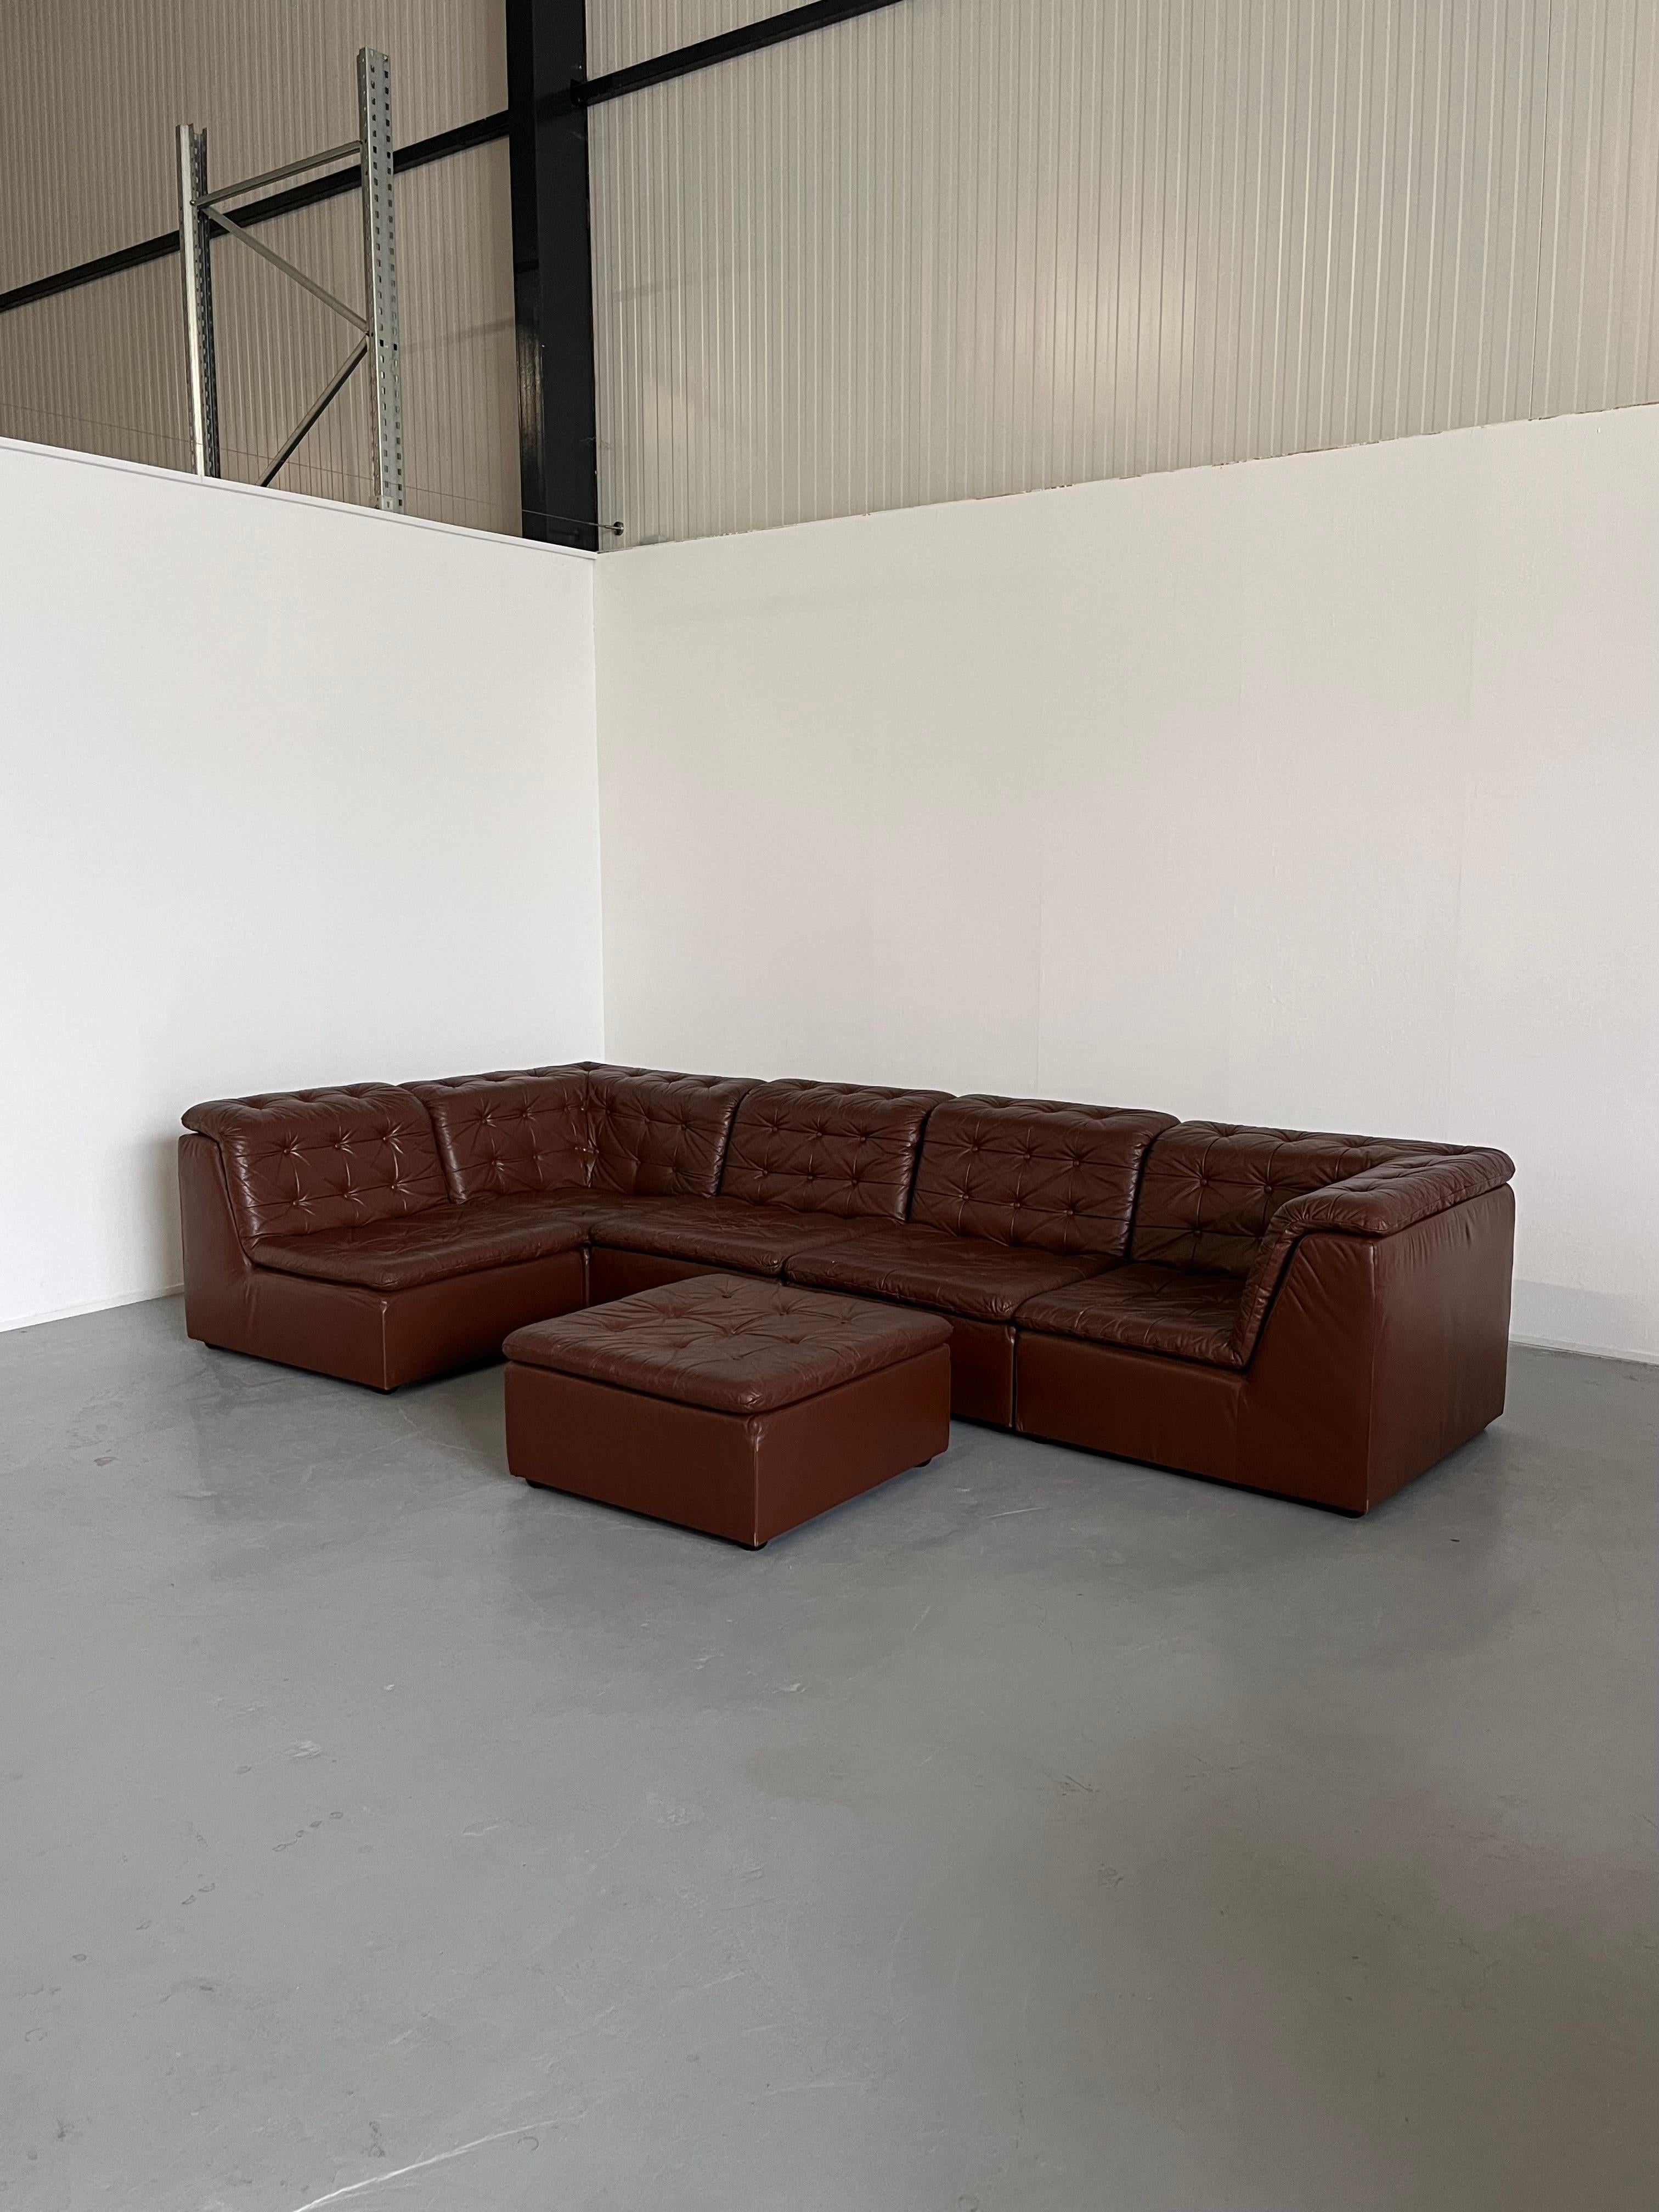 Ein atemberaubendes sechsteiliges Mid-Century Modern Patchwork-Sofa aus cognacbraunem Leder, hergestellt in den späten 1970er Jahren von Laauser, derzeit einer der beliebtesten Hersteller auf dem Vintage-Markt für modulare und Sektionssofas.
Ein